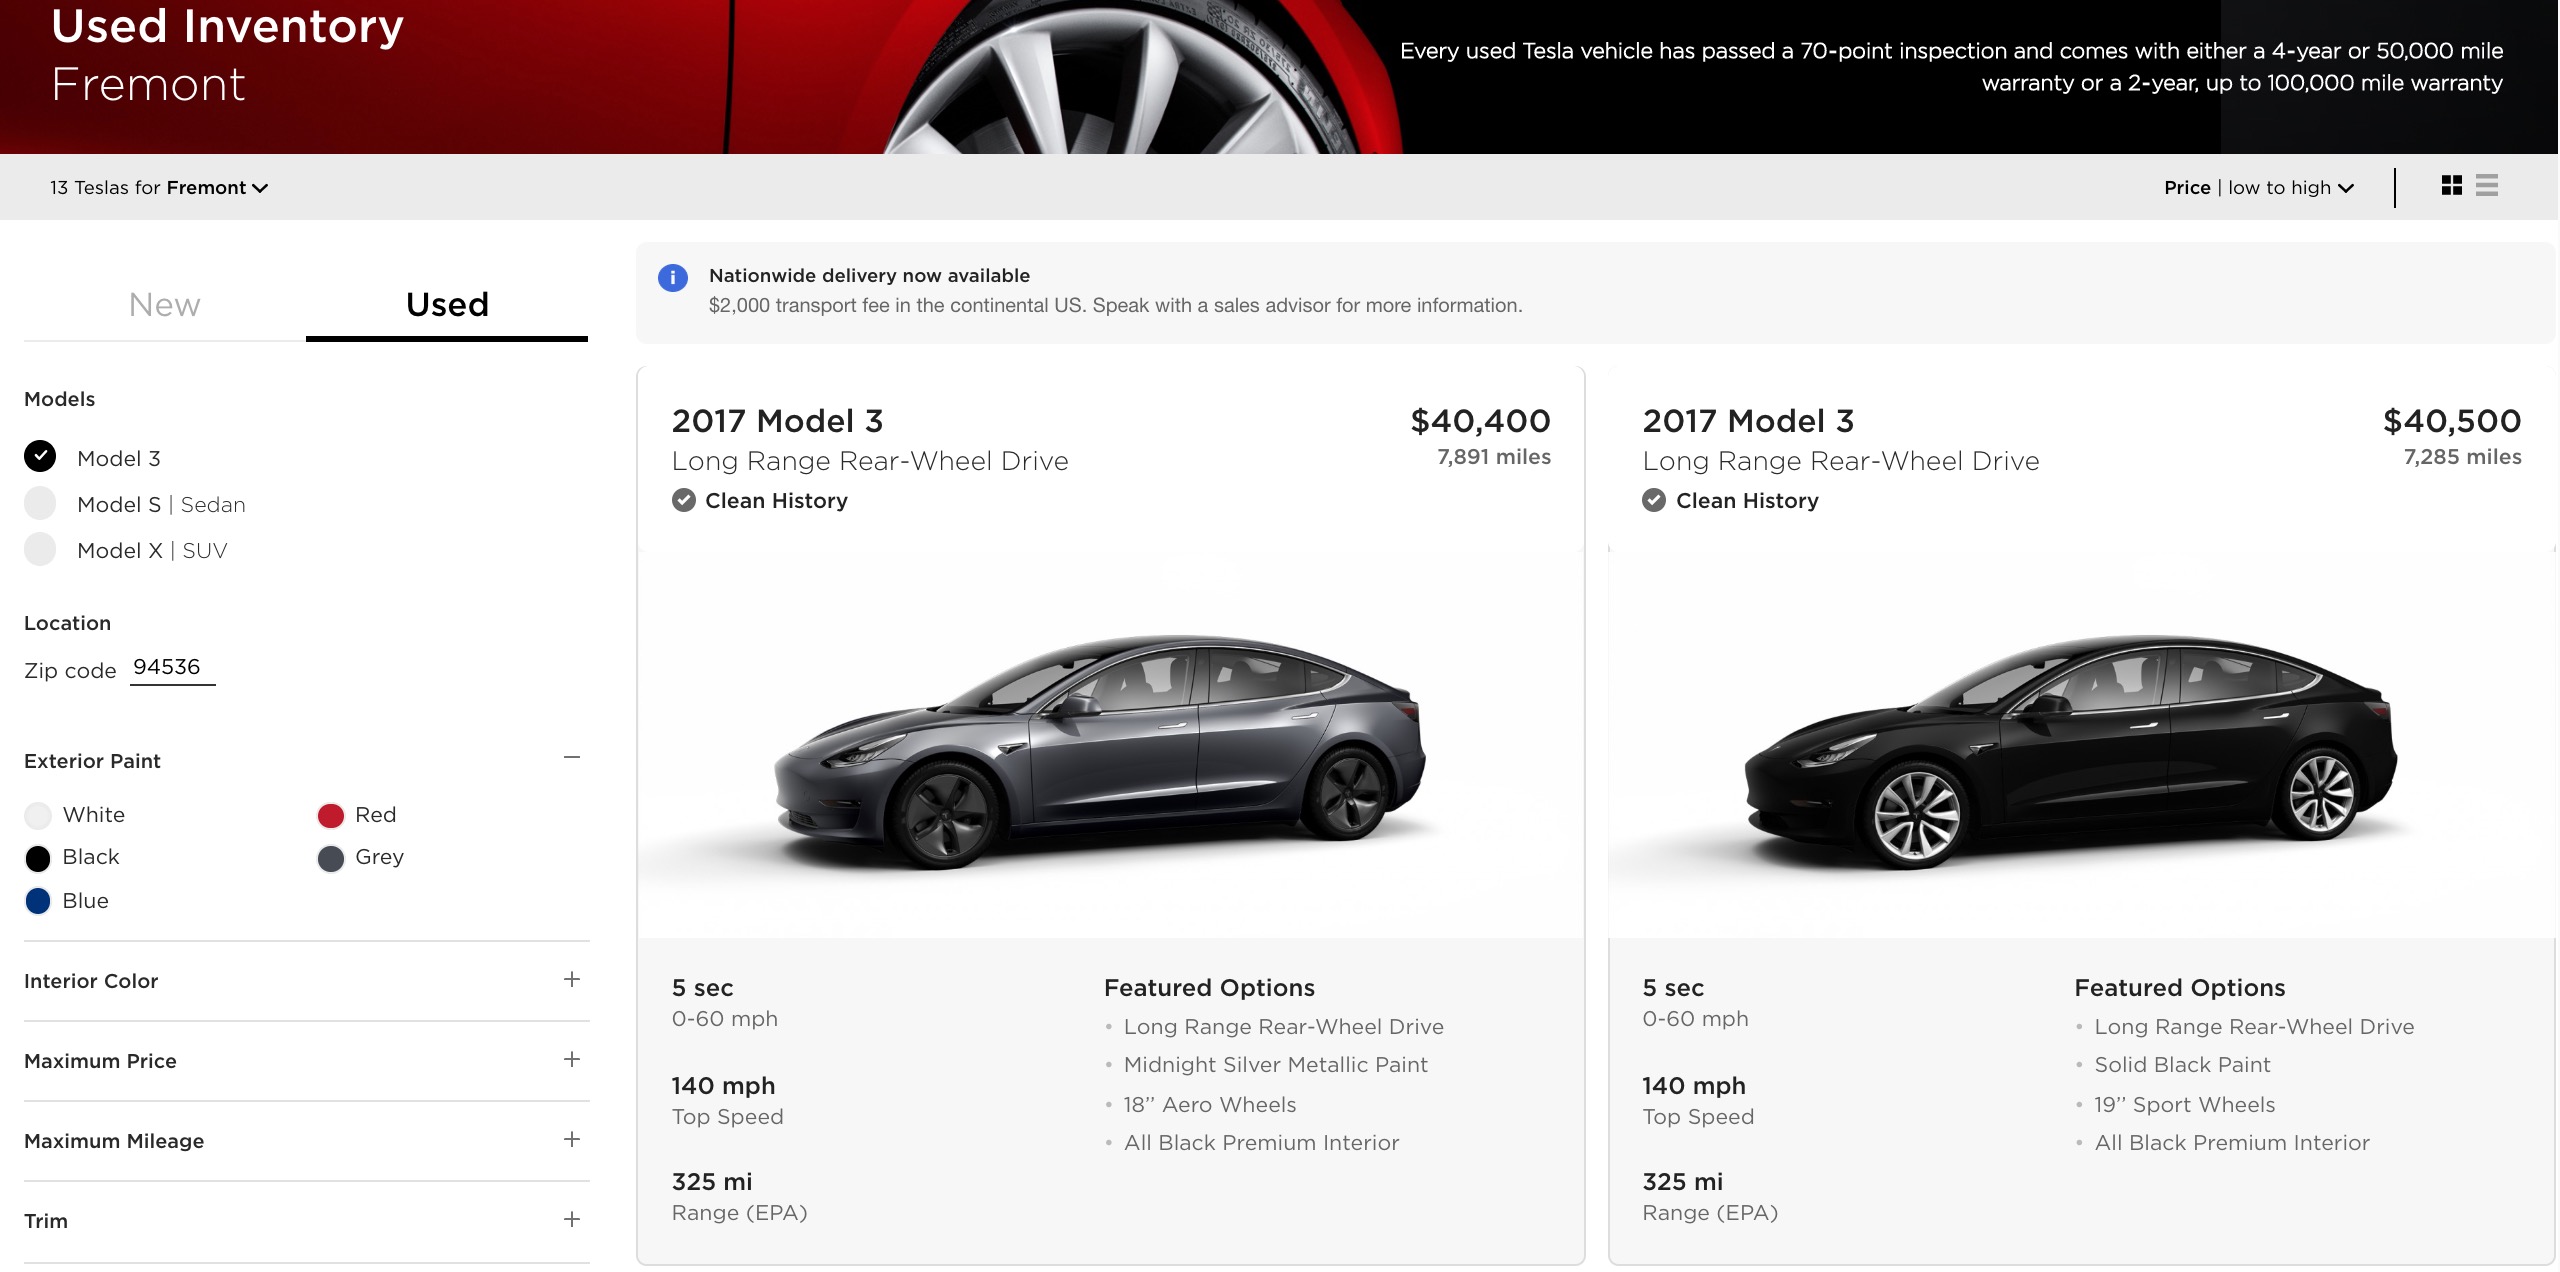 Покупка подержанной Tesla может стать доступным ответом на ваши мечты об электромобиле